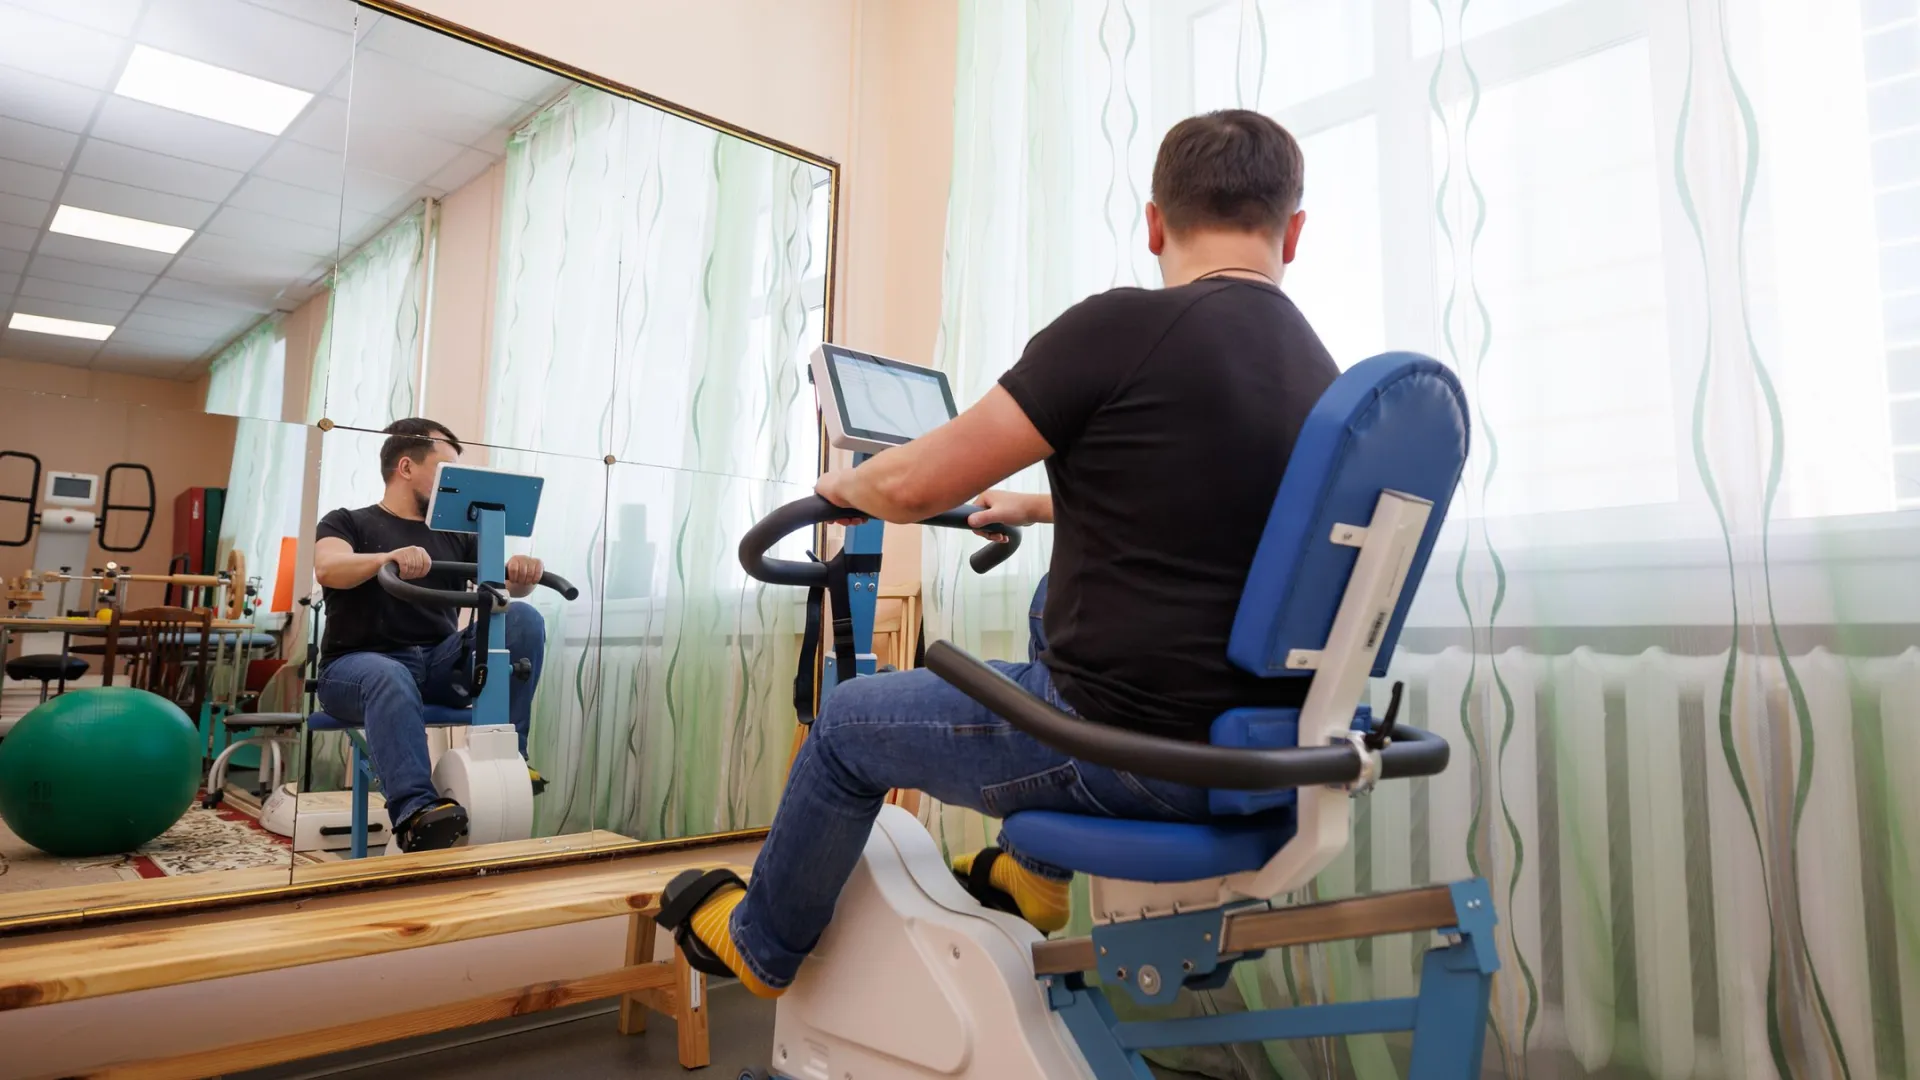 На Ямале появились уникальные тренажеры для реабилитации пациентов. Фото: Юлия Чудинова / «Ямал-Медиа»